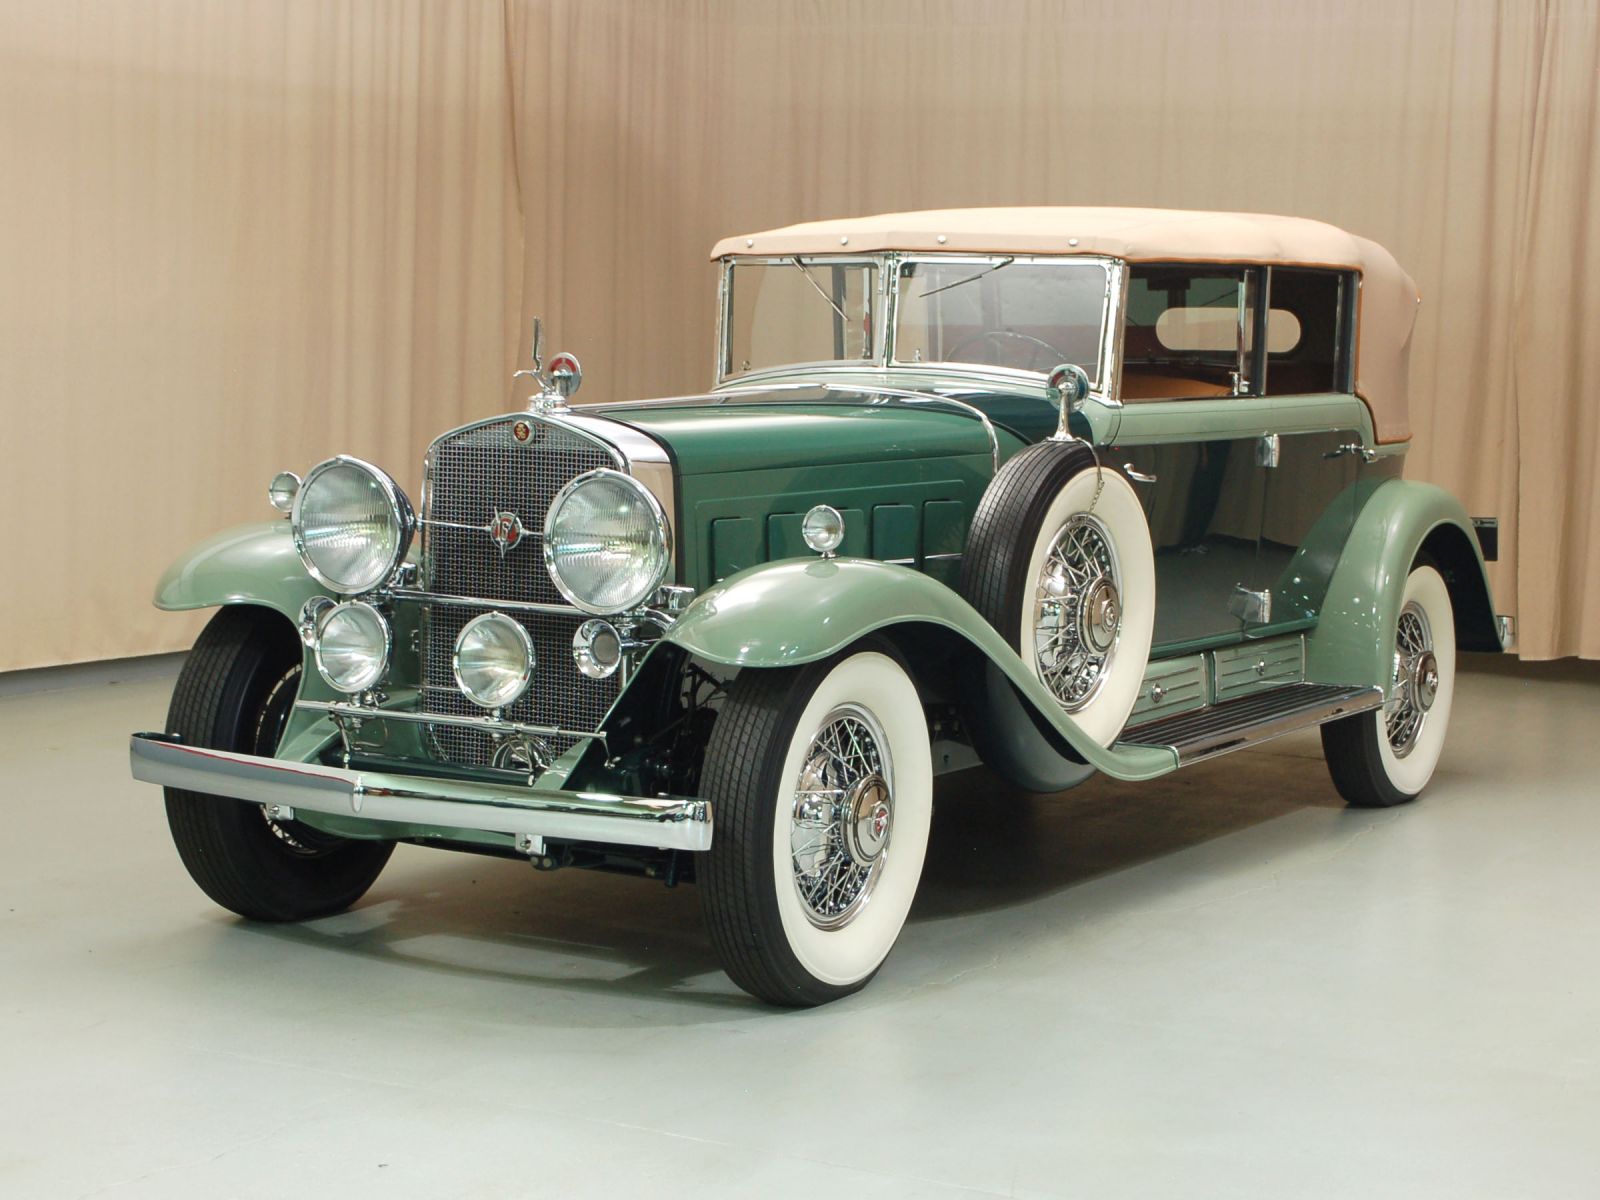 1930 Cadillac V-16 Wallpapers